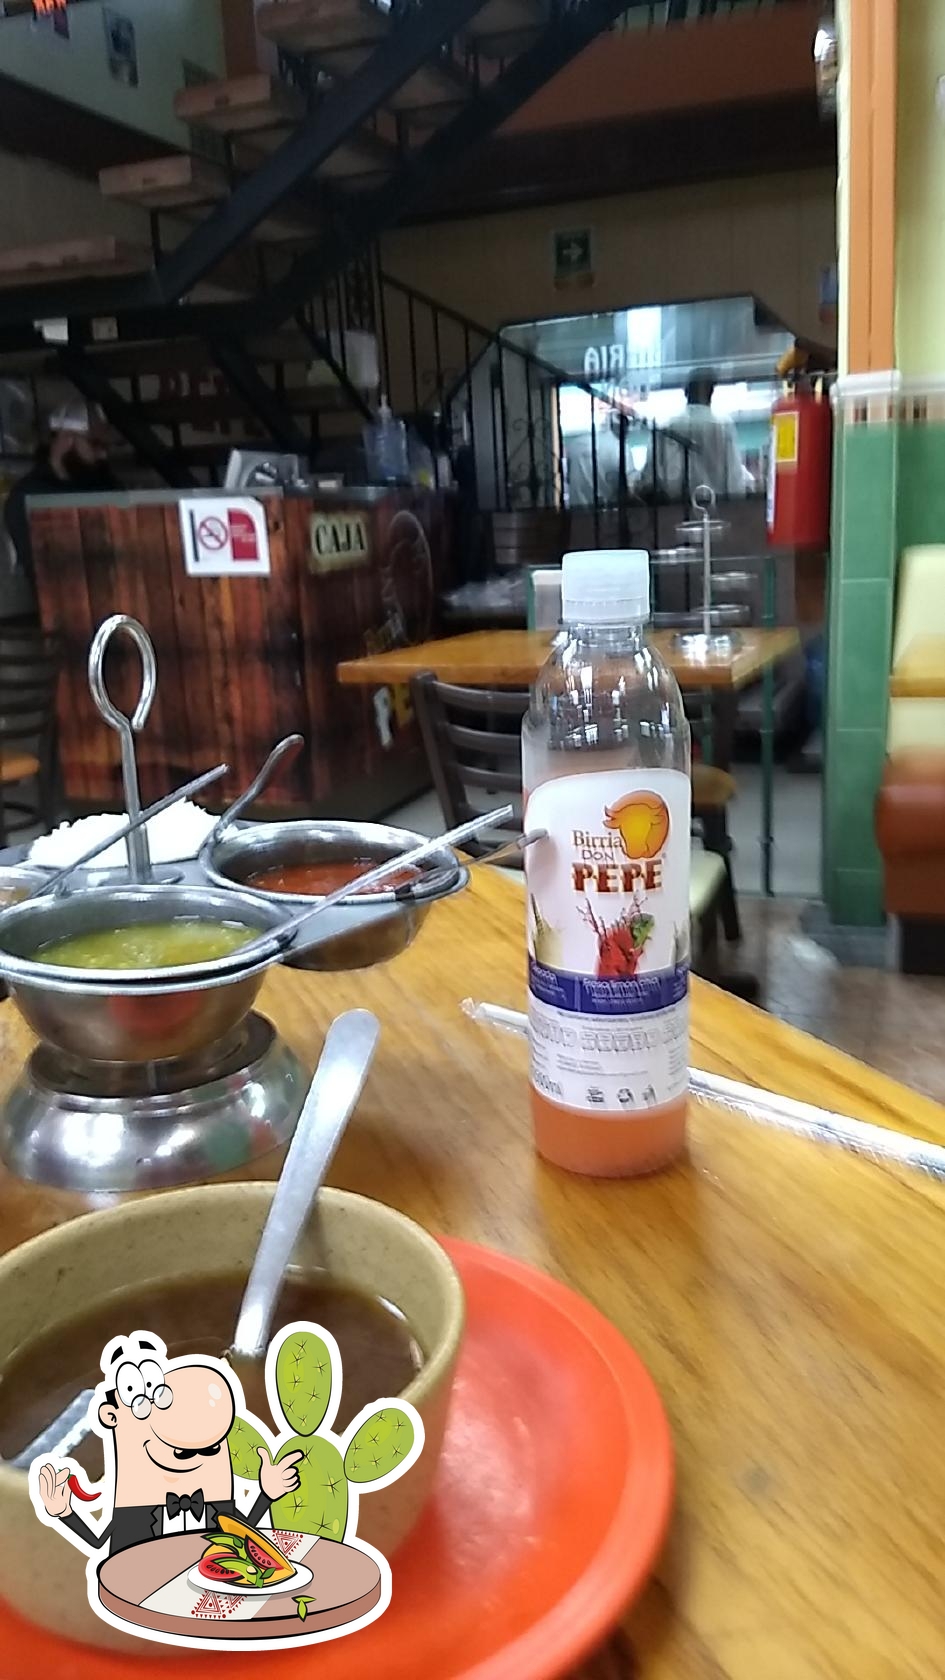 Restaurante Birria ''Don Pepe'', Ciudad de México, Esq. Campesinos -  Opiniones del restaurante